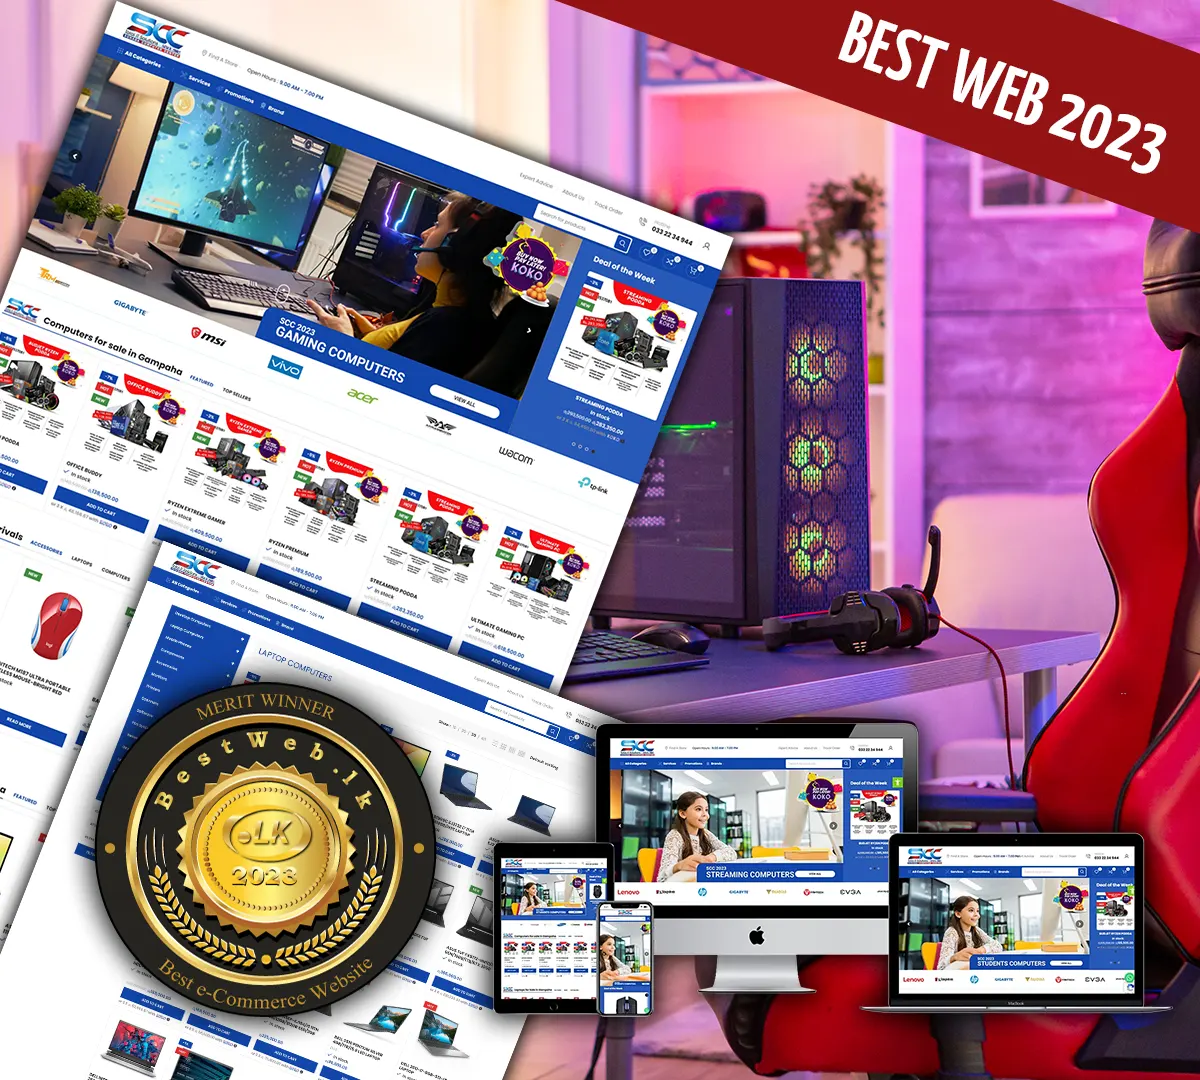 ecommerce web design in sri lanka winner of best web